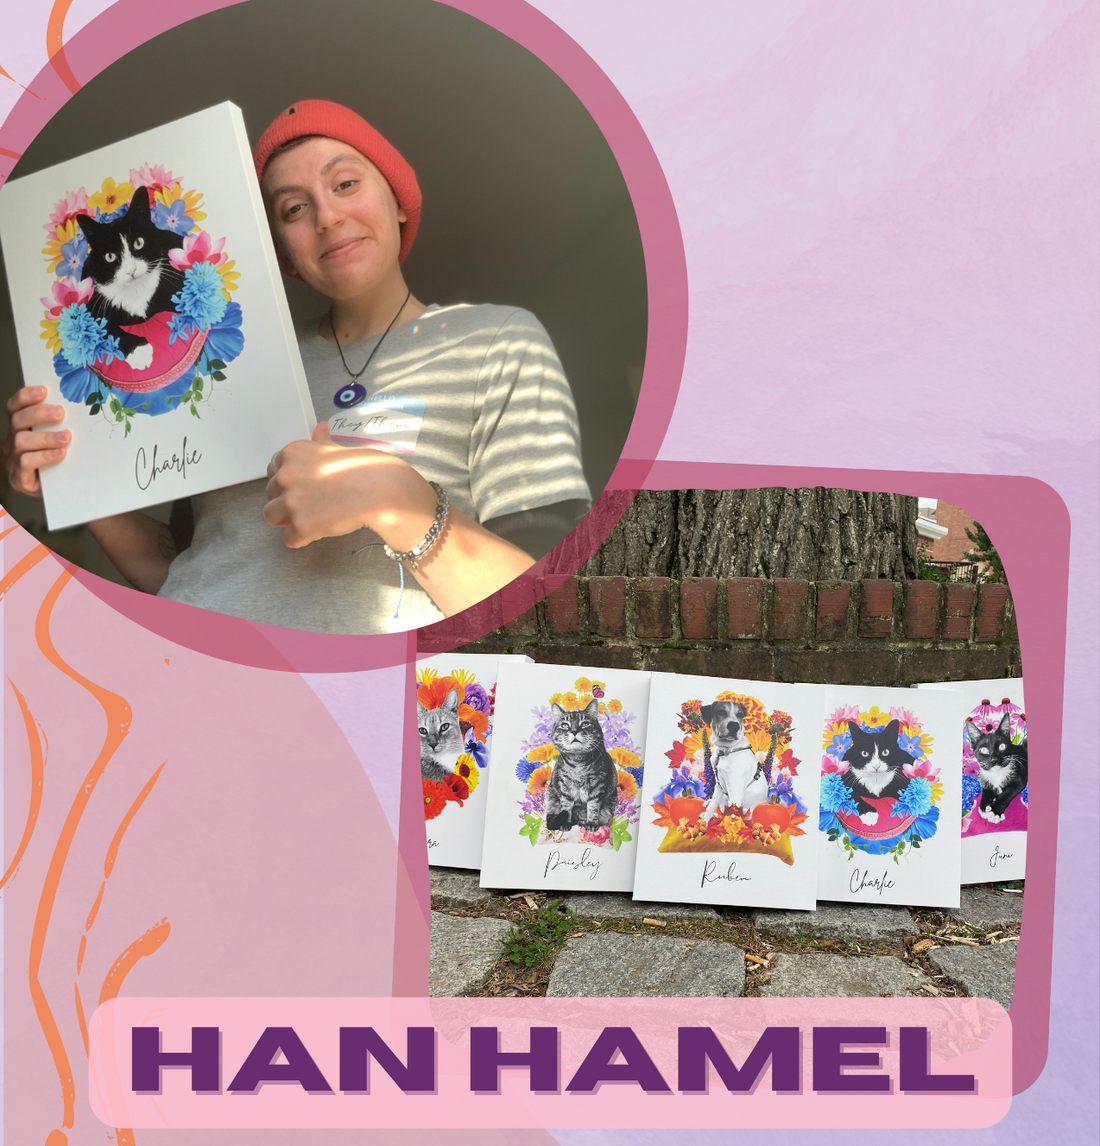 DECEMBER 2022 FEATURED ARTIST: HAN HAMEL